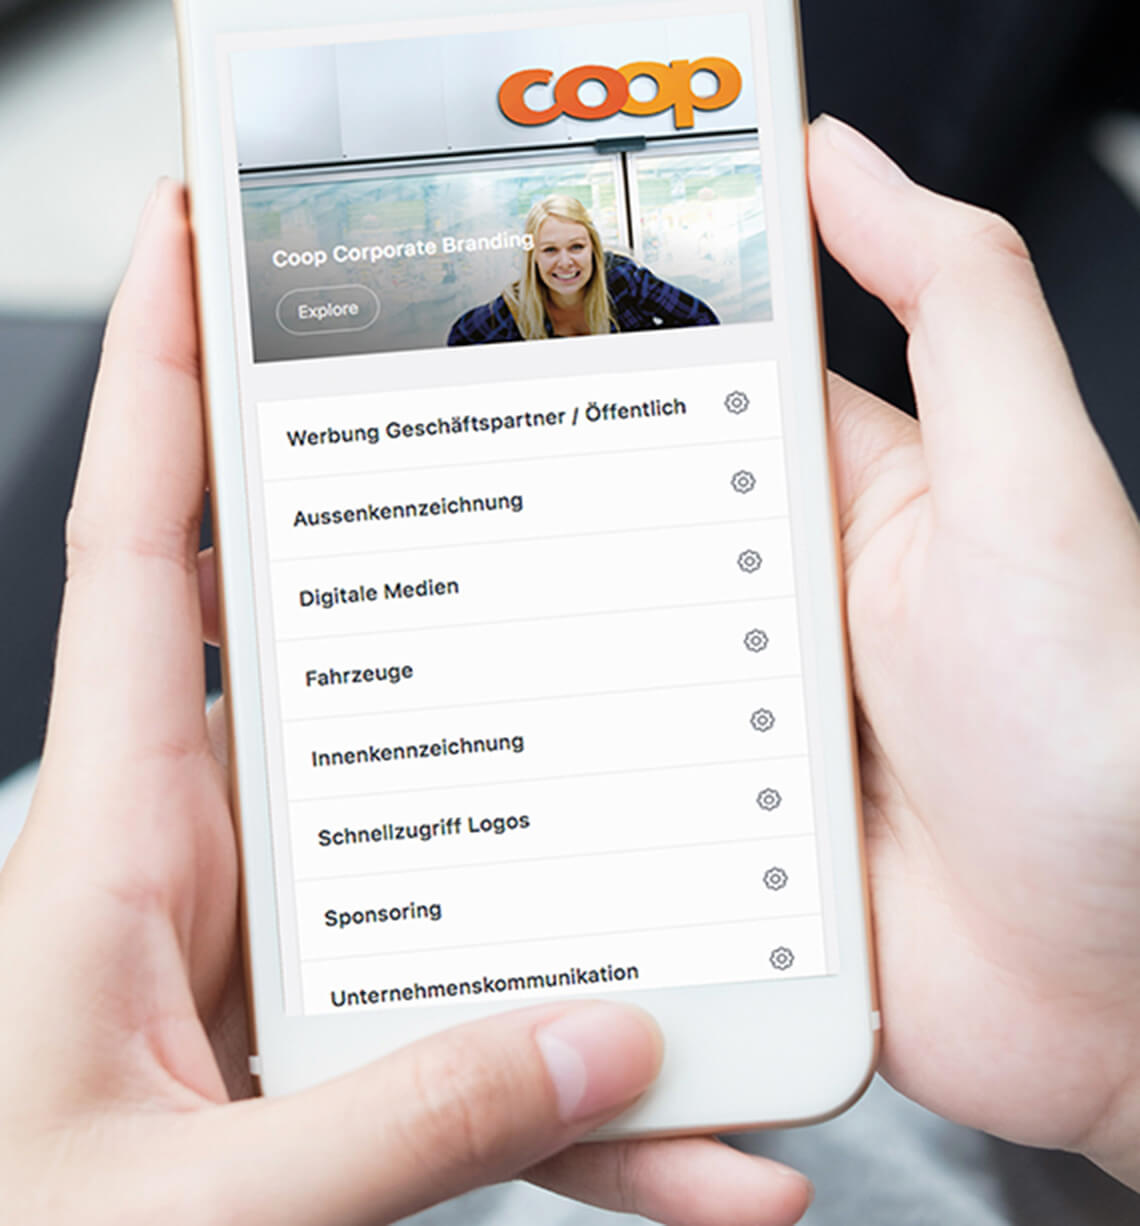 Coop Corporate Branding Plattform